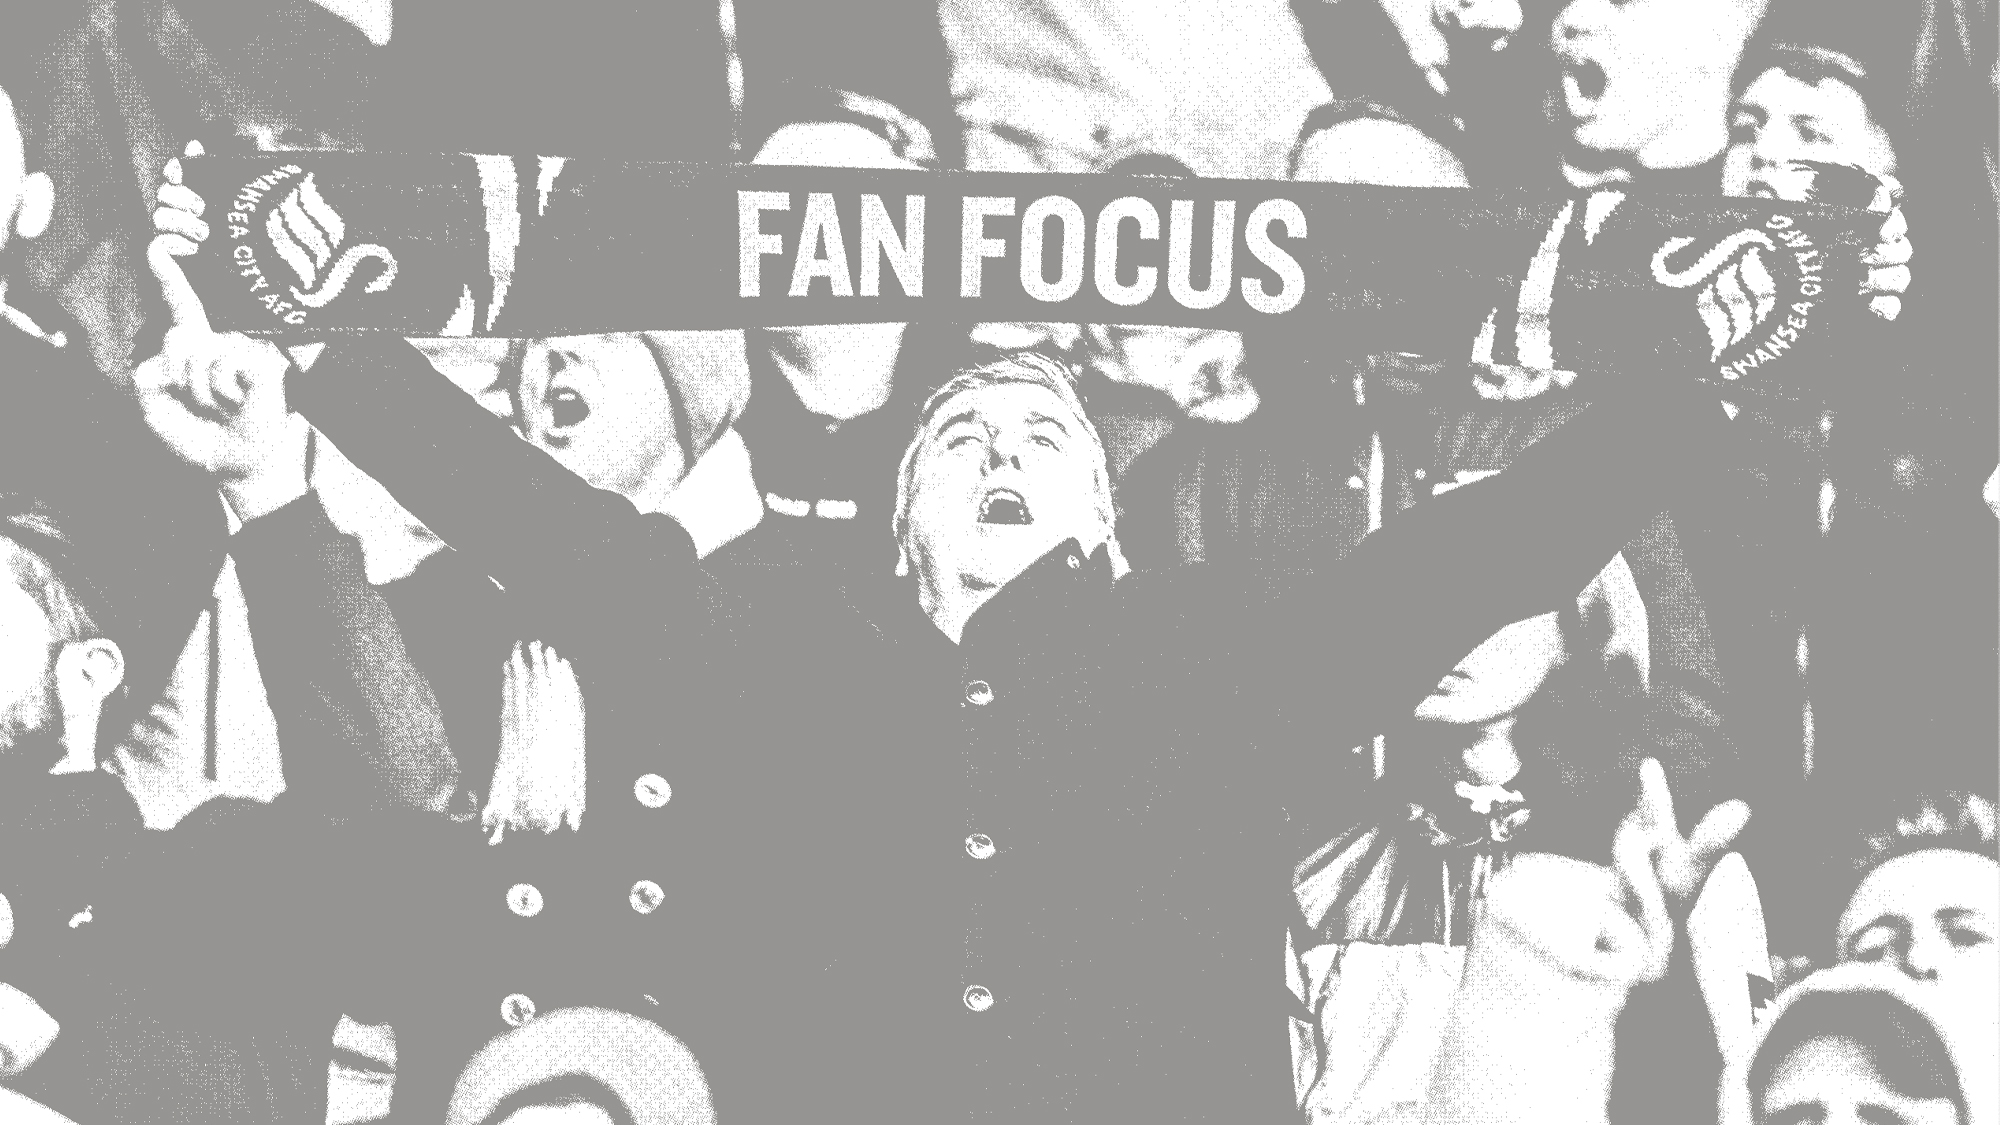 Fan focus